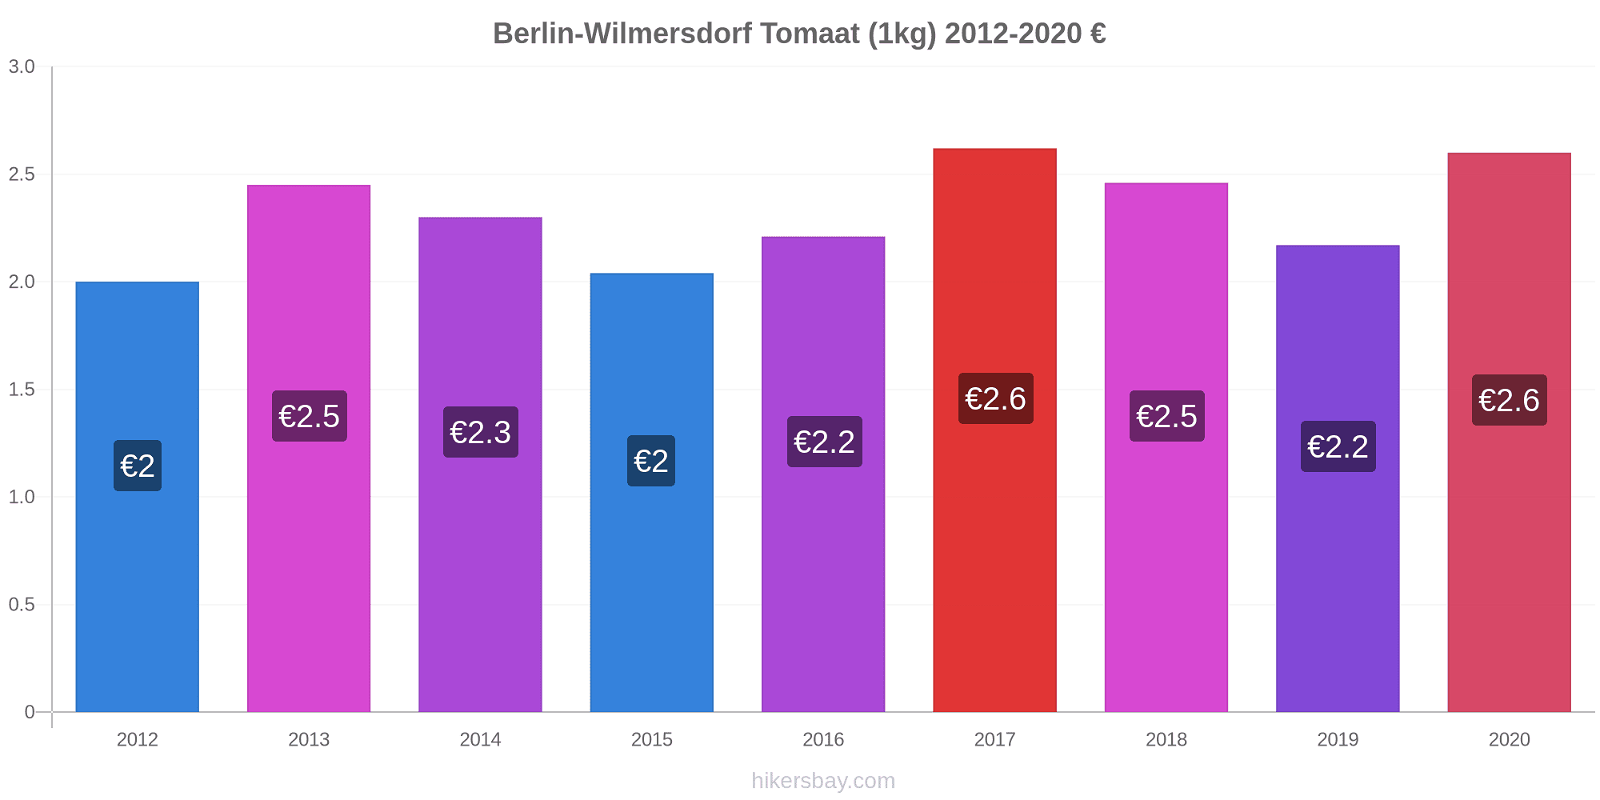 Berlin-Wilmersdorf prijswijzigingen Tomaat (1kg) hikersbay.com